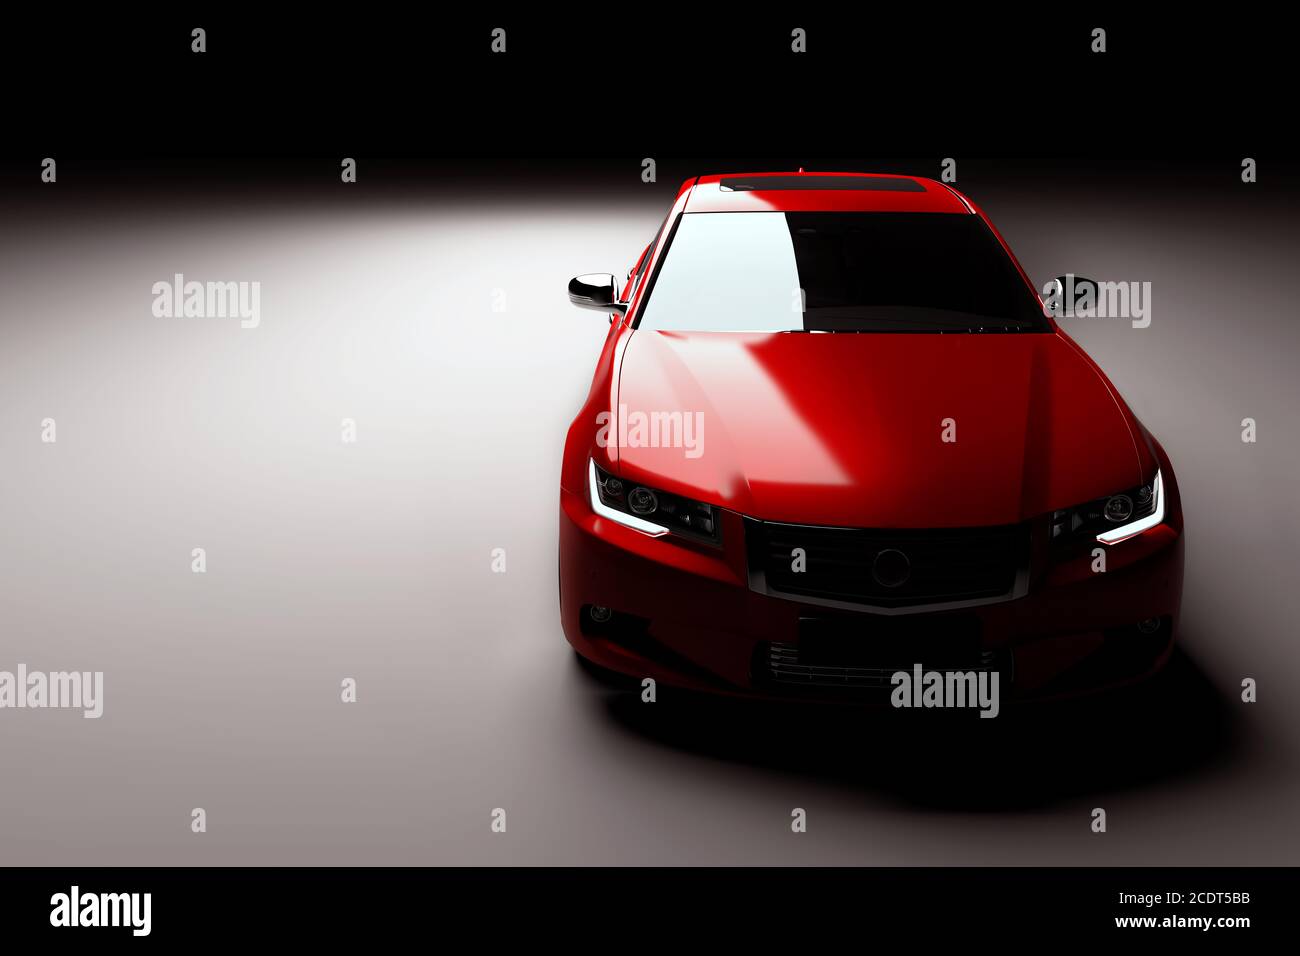 Neue rote Metallic-Limousine im Rampenlicht. Modernes Design, brandlos. Stockfoto